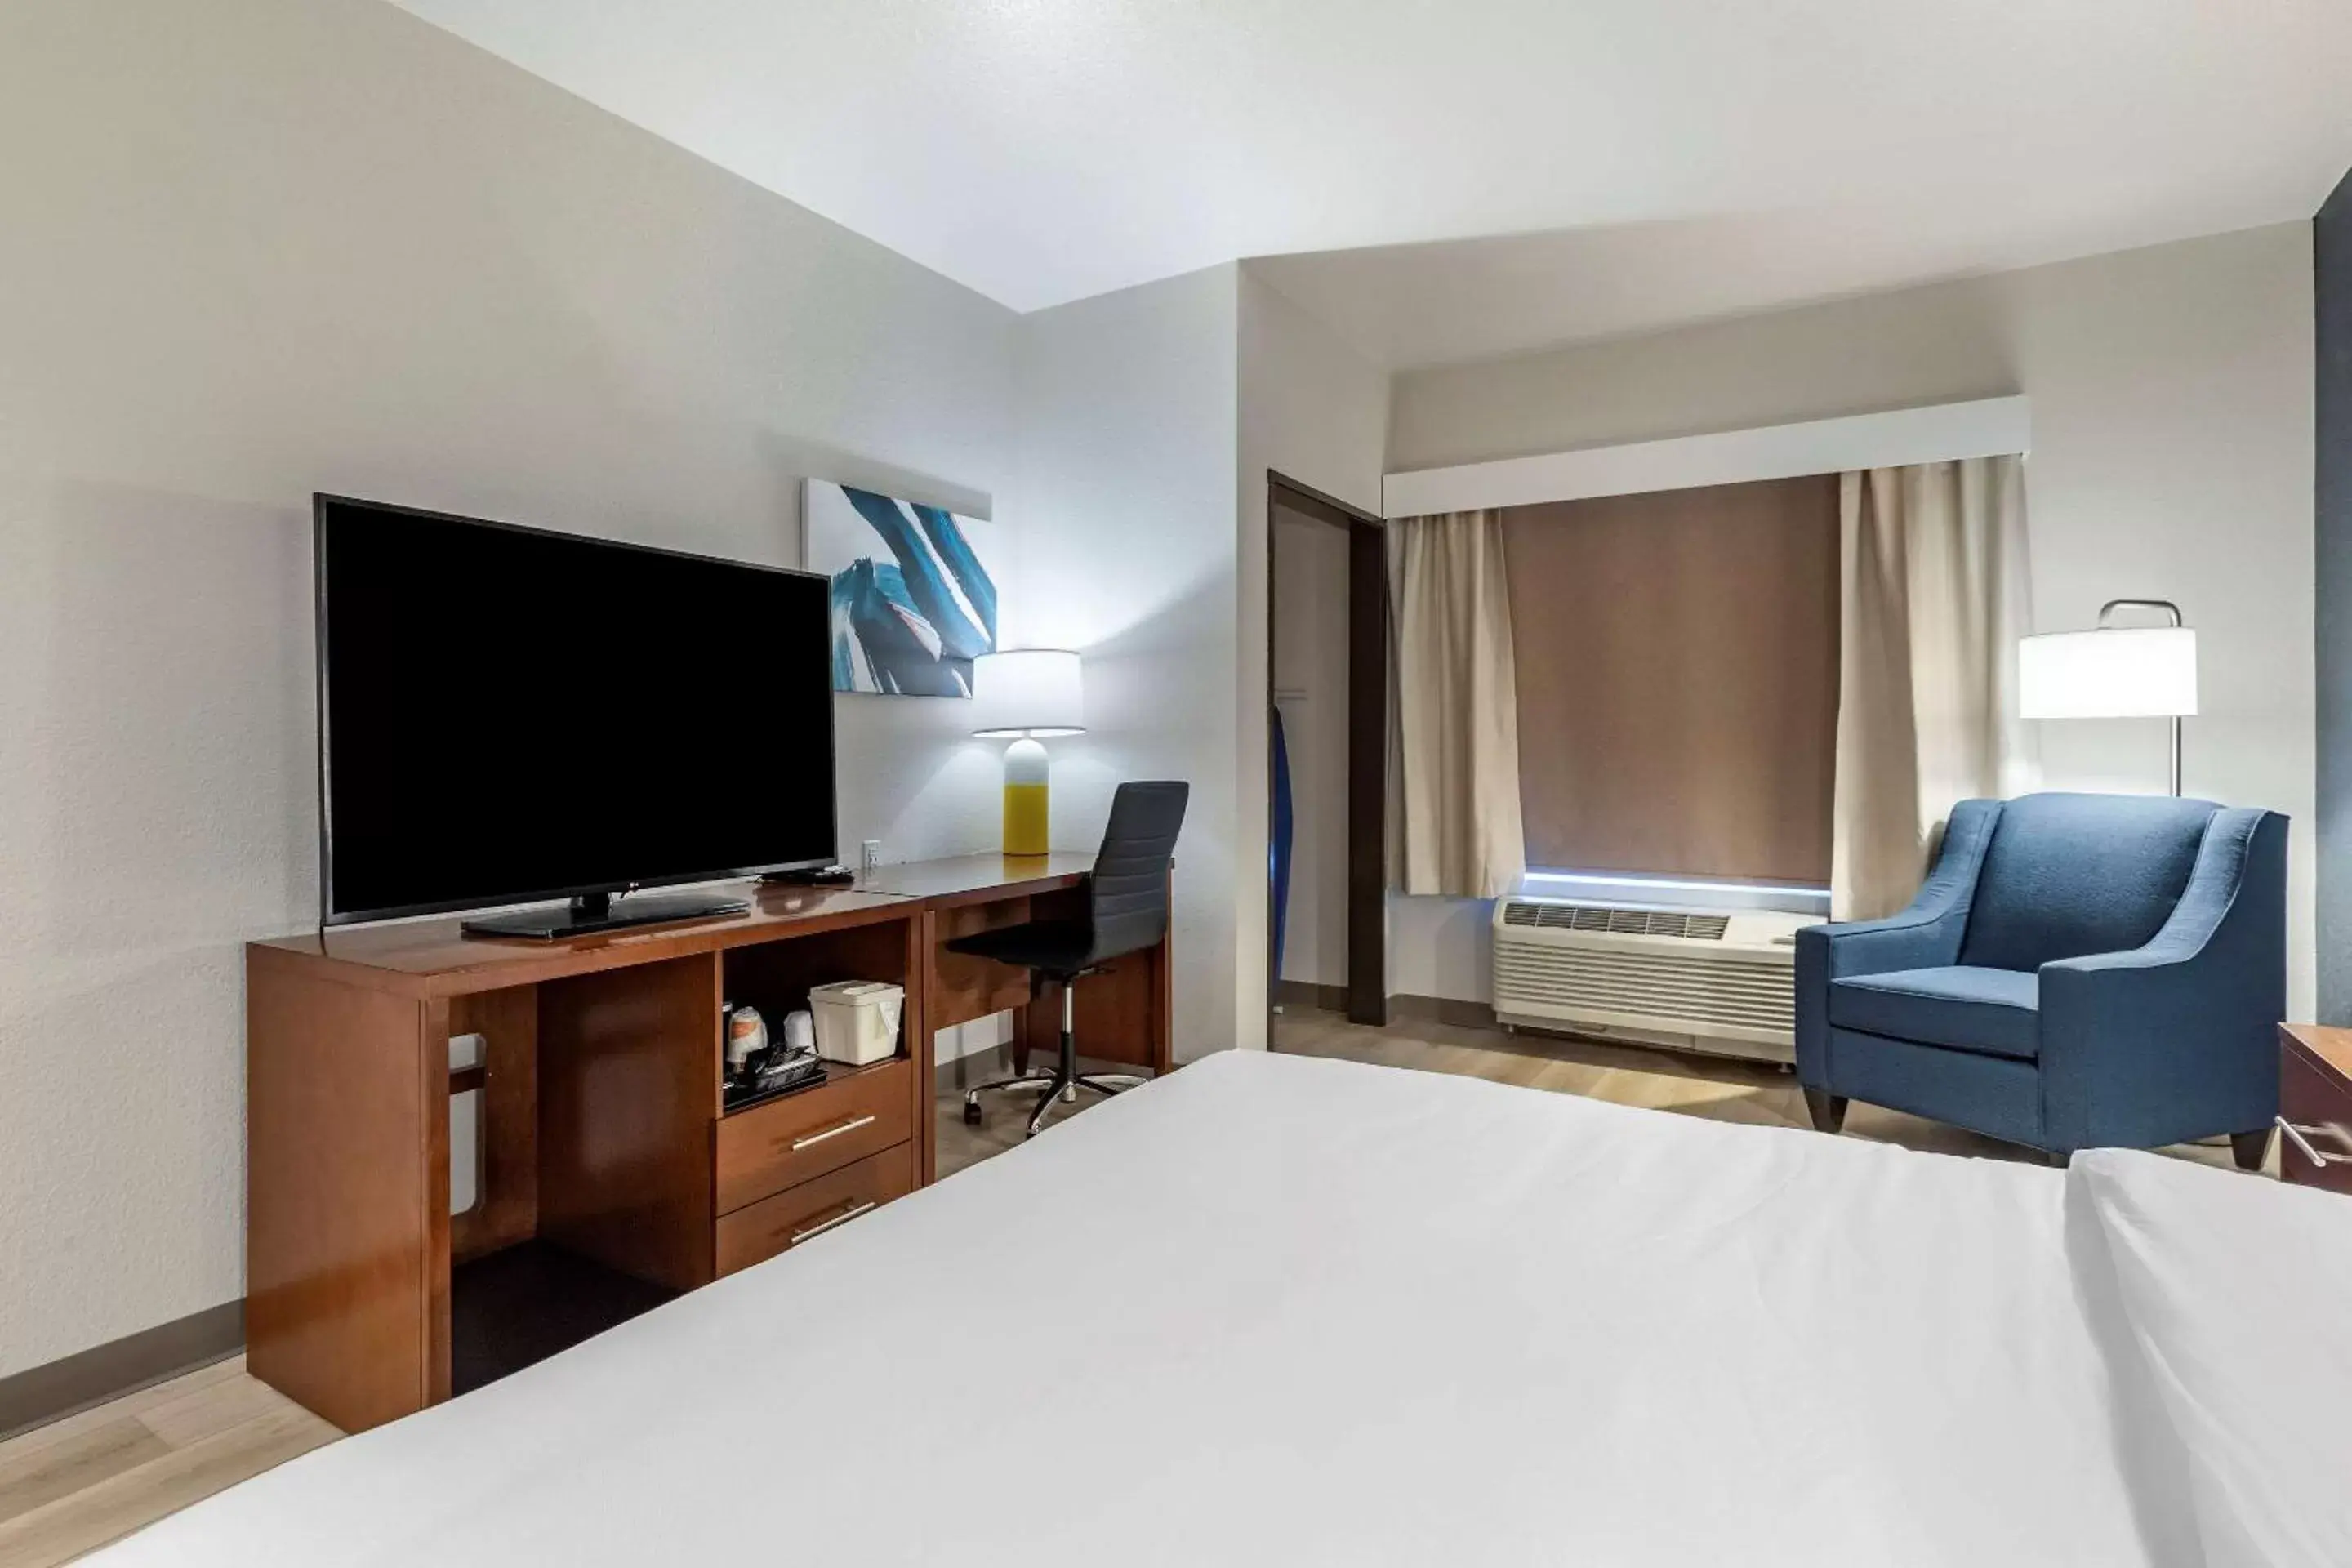 Bedroom, TV/Entertainment Center in Comfort Inn & Suites Bennett